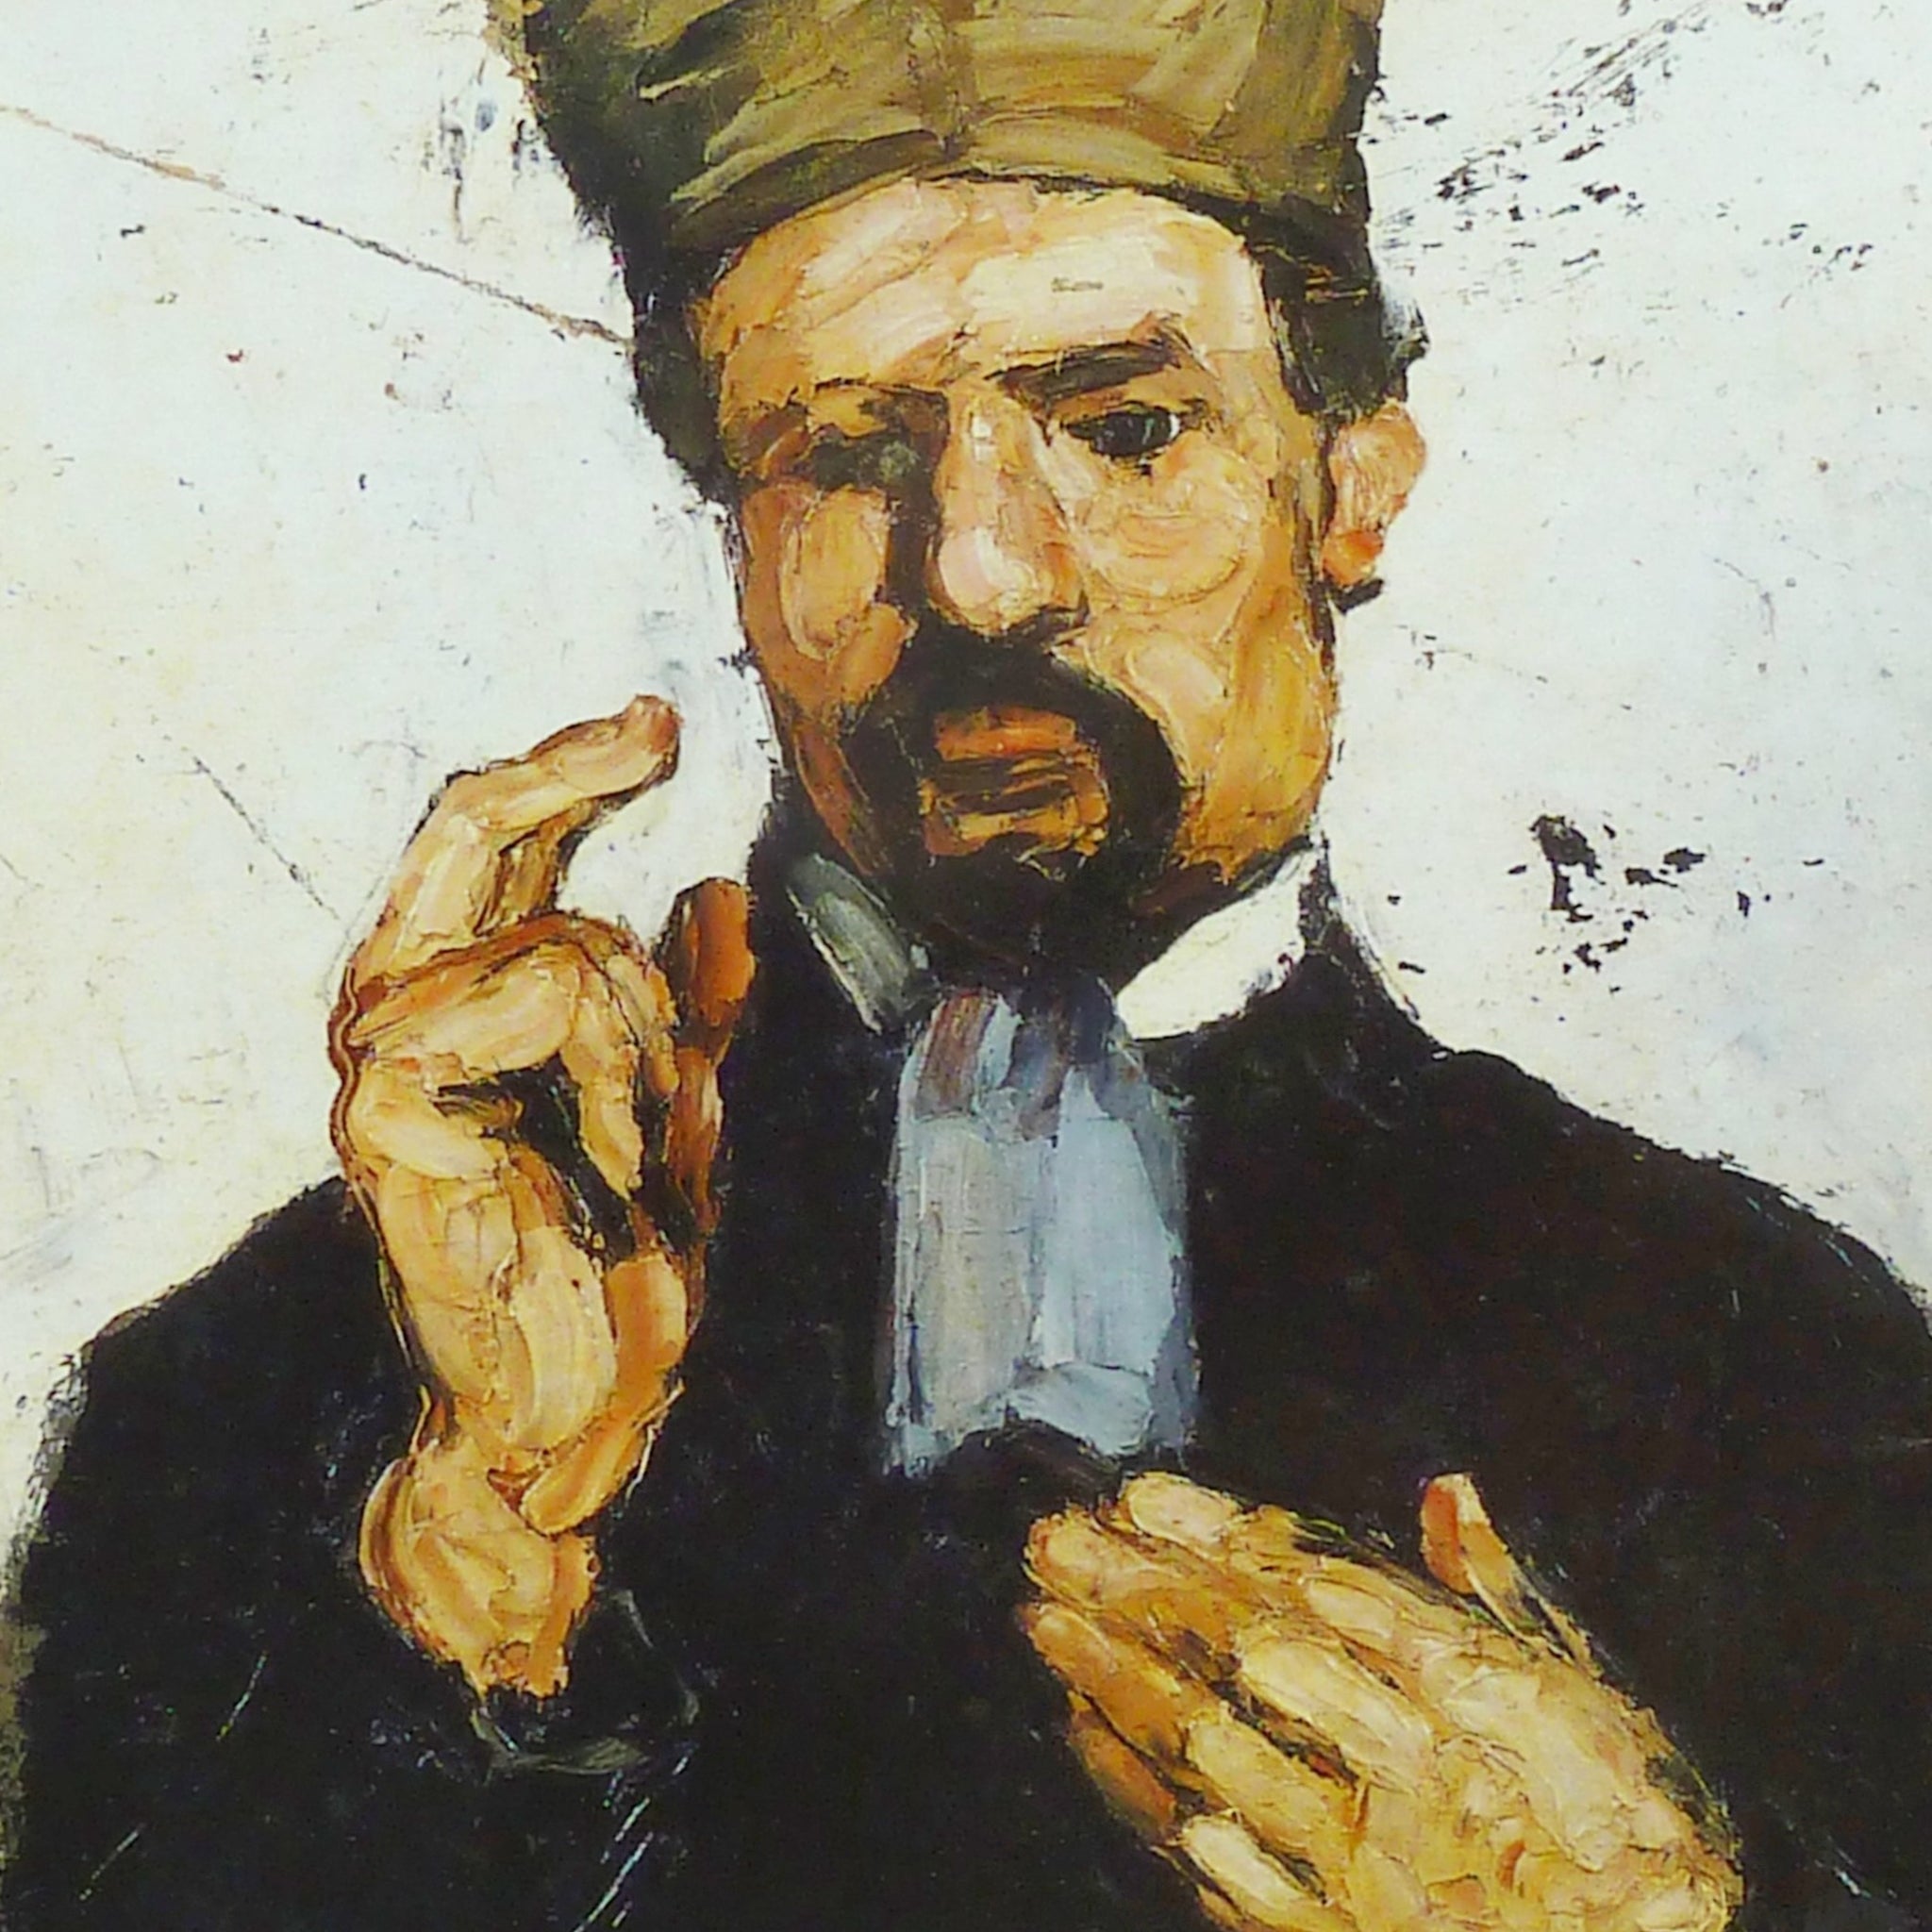 L'avocat - Paul Cézanne